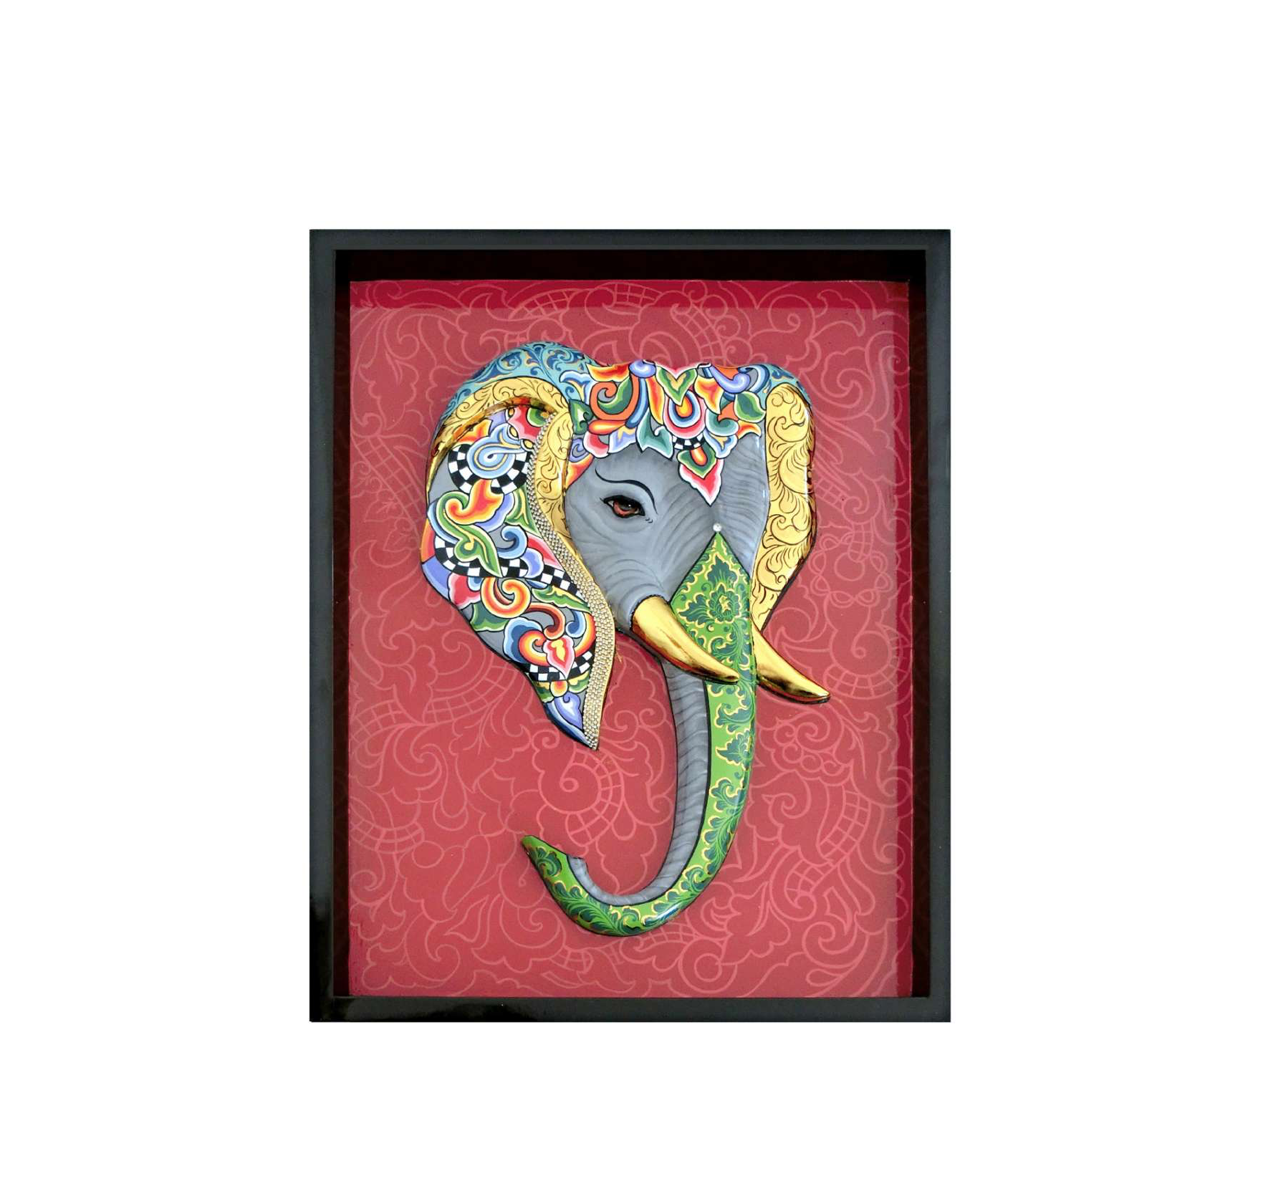 Elephant painting 3-D - H80 x L60 cm